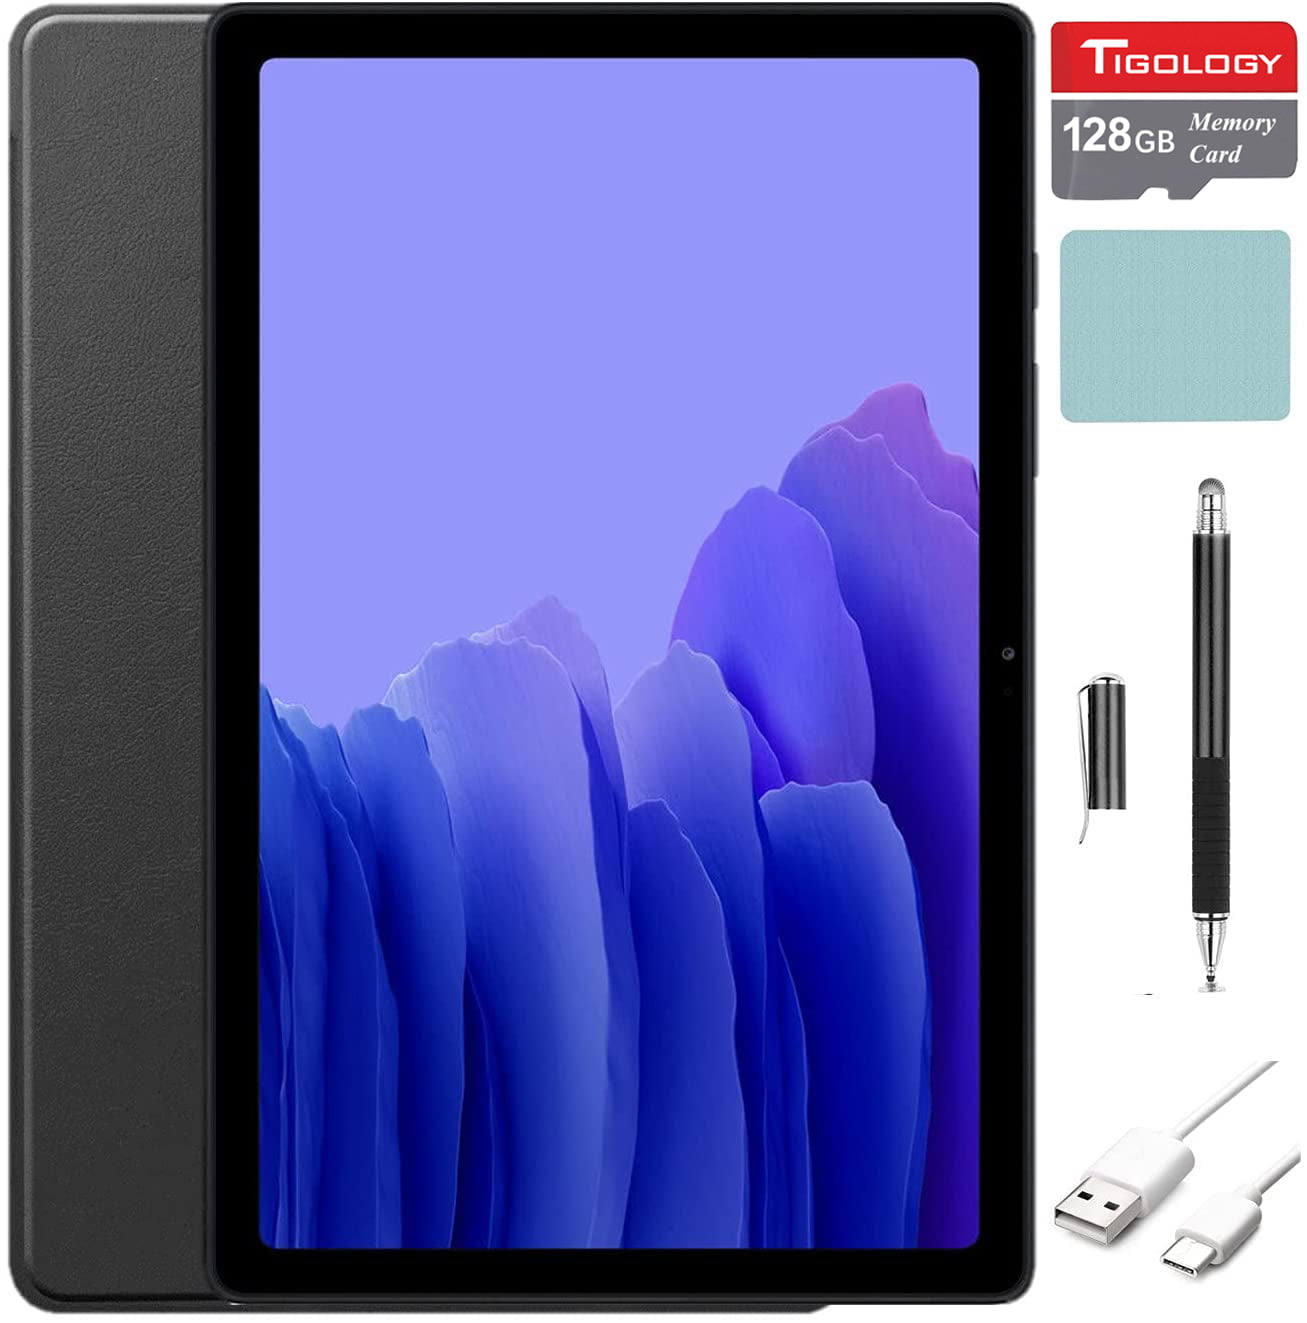 Door Verplaatsbaar vis 2021 Samsung Galaxy Tab A7 10.4'' (2000x1200) TFT Display Wi-Fi Tablet  Bundle(32GB, Gray）, 3GB RAM, Android 10 OS with Tigology Accessories -  Walmart.com